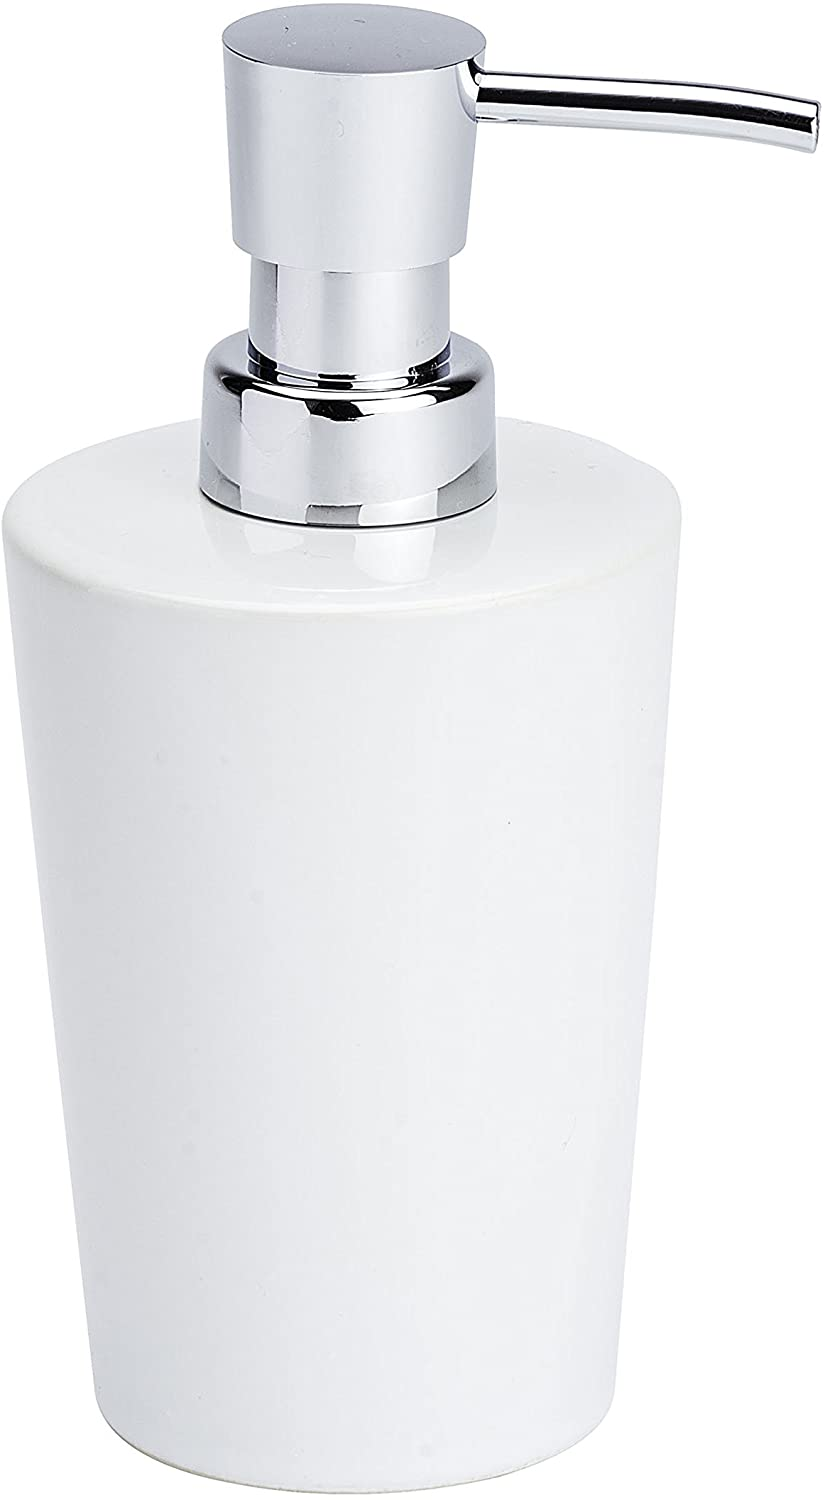 Seifenspender Coni Weiß - Flüssigseifen-Spender, Spülmittel-Spender Fassungsvermögen: 0.3 l, Keramik, 9.2 x 16.4 x 7.8 cm, Weiß